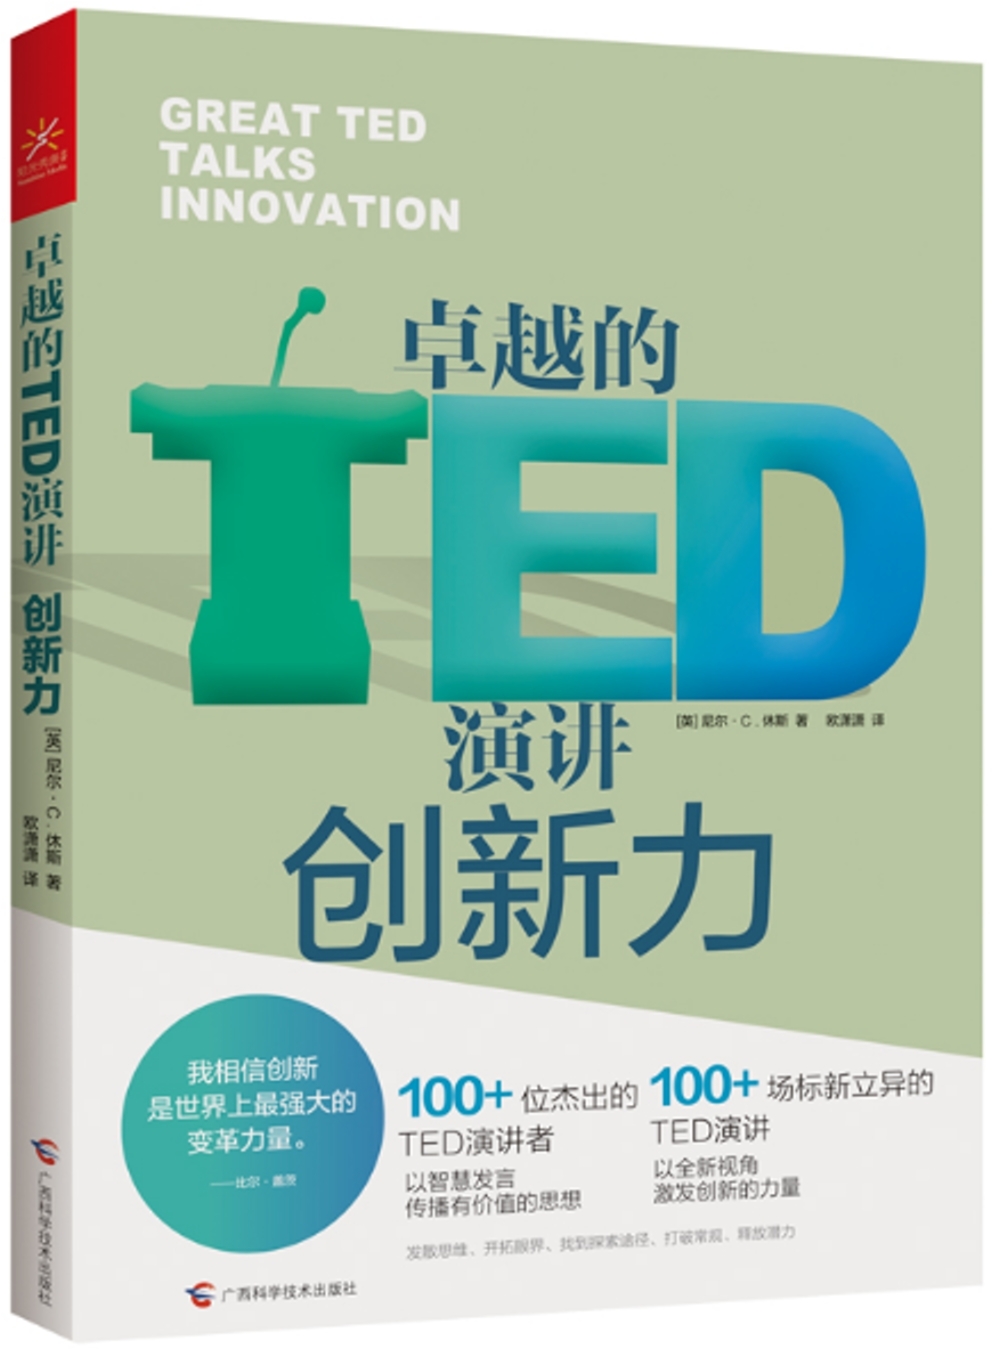 卓越的TED演講：創新力